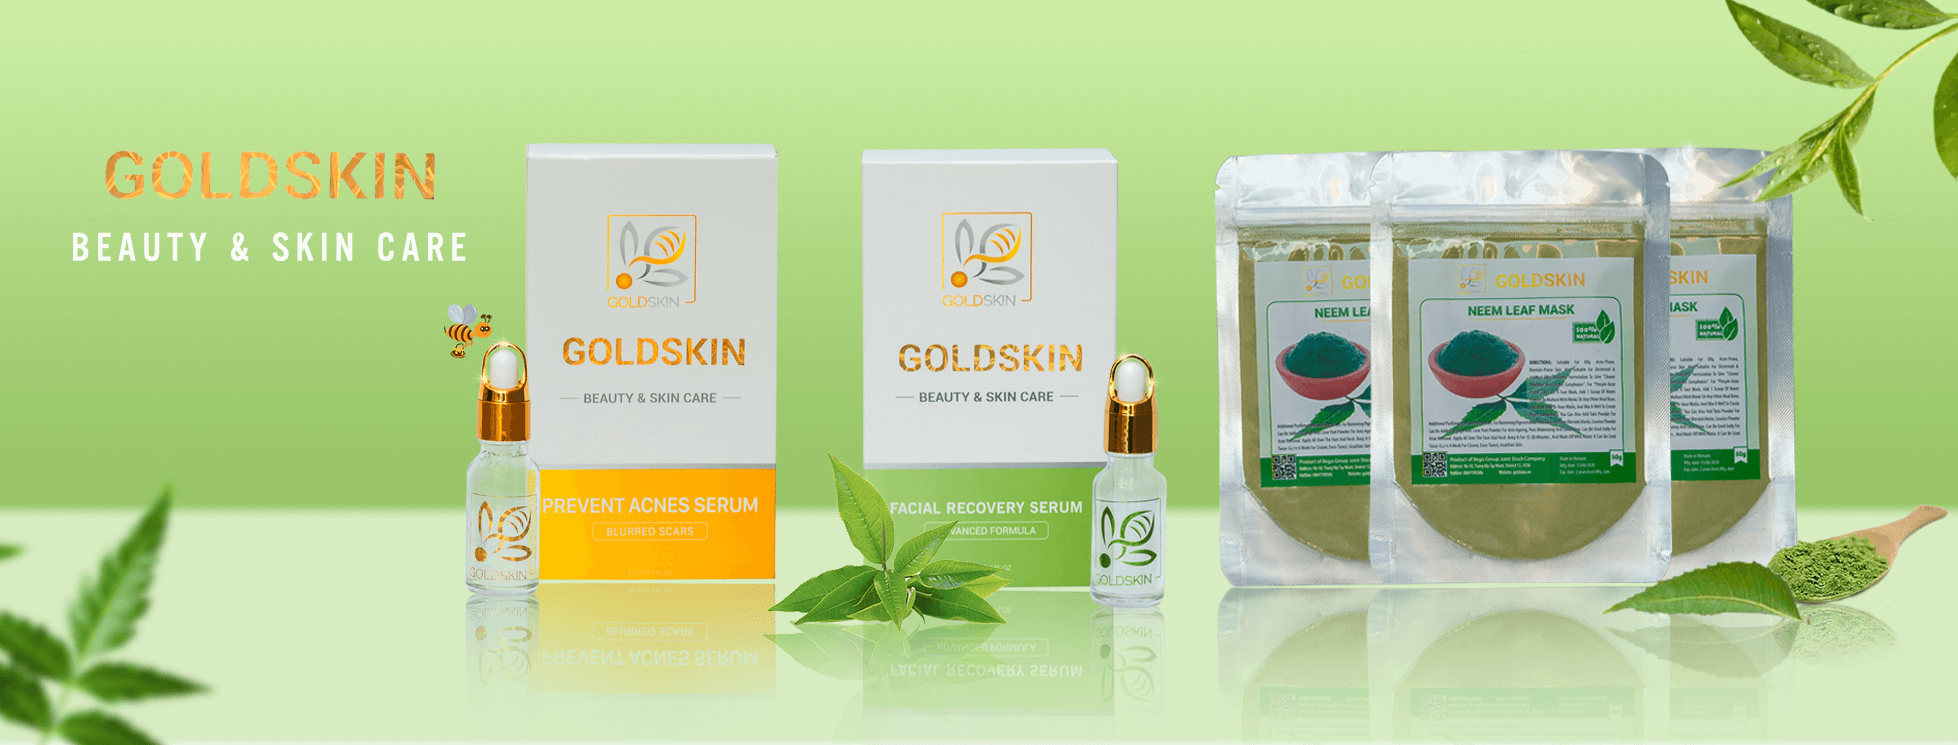 Goldskin xuất hiện trên thị trường với mức giá khá rẻ nhưng được chiết xuất hoàn toàn từ thiên nhiên